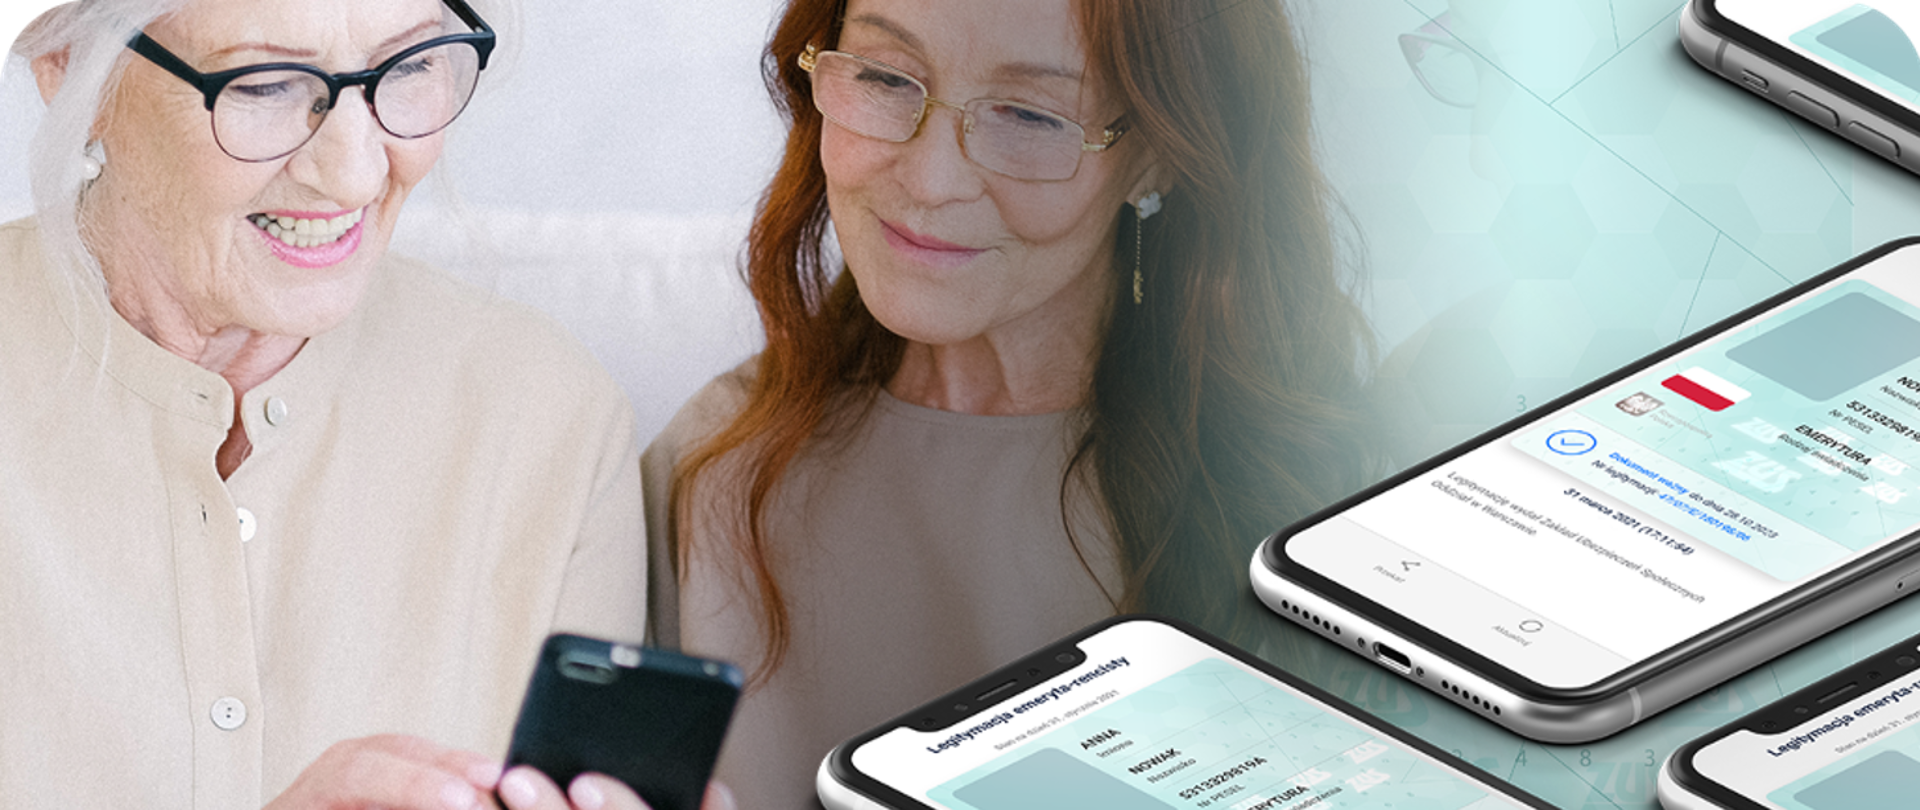 Dwie kobiety w wieku emerytalnym oglądają ekran smartfona (w domyśle na ekranie wyświetlona jest Legitymacja emeryta-rencisty). Na obraz nałożona jest wizualizacja dokumentu